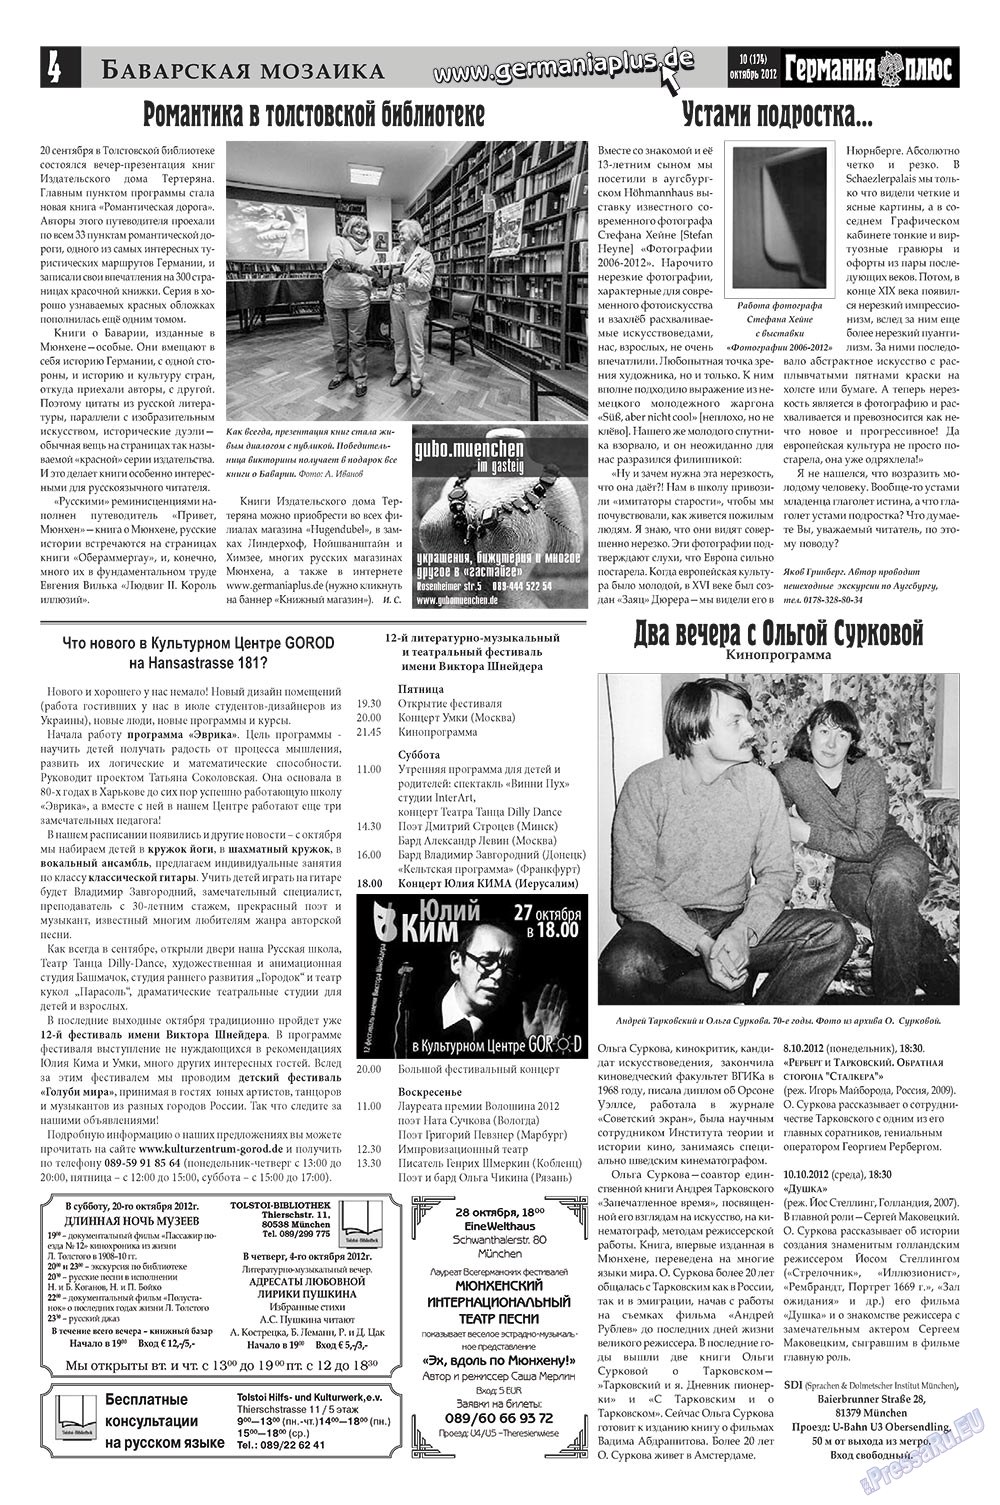 Германия плюс (газета). 2012 год, номер 10, стр. 4